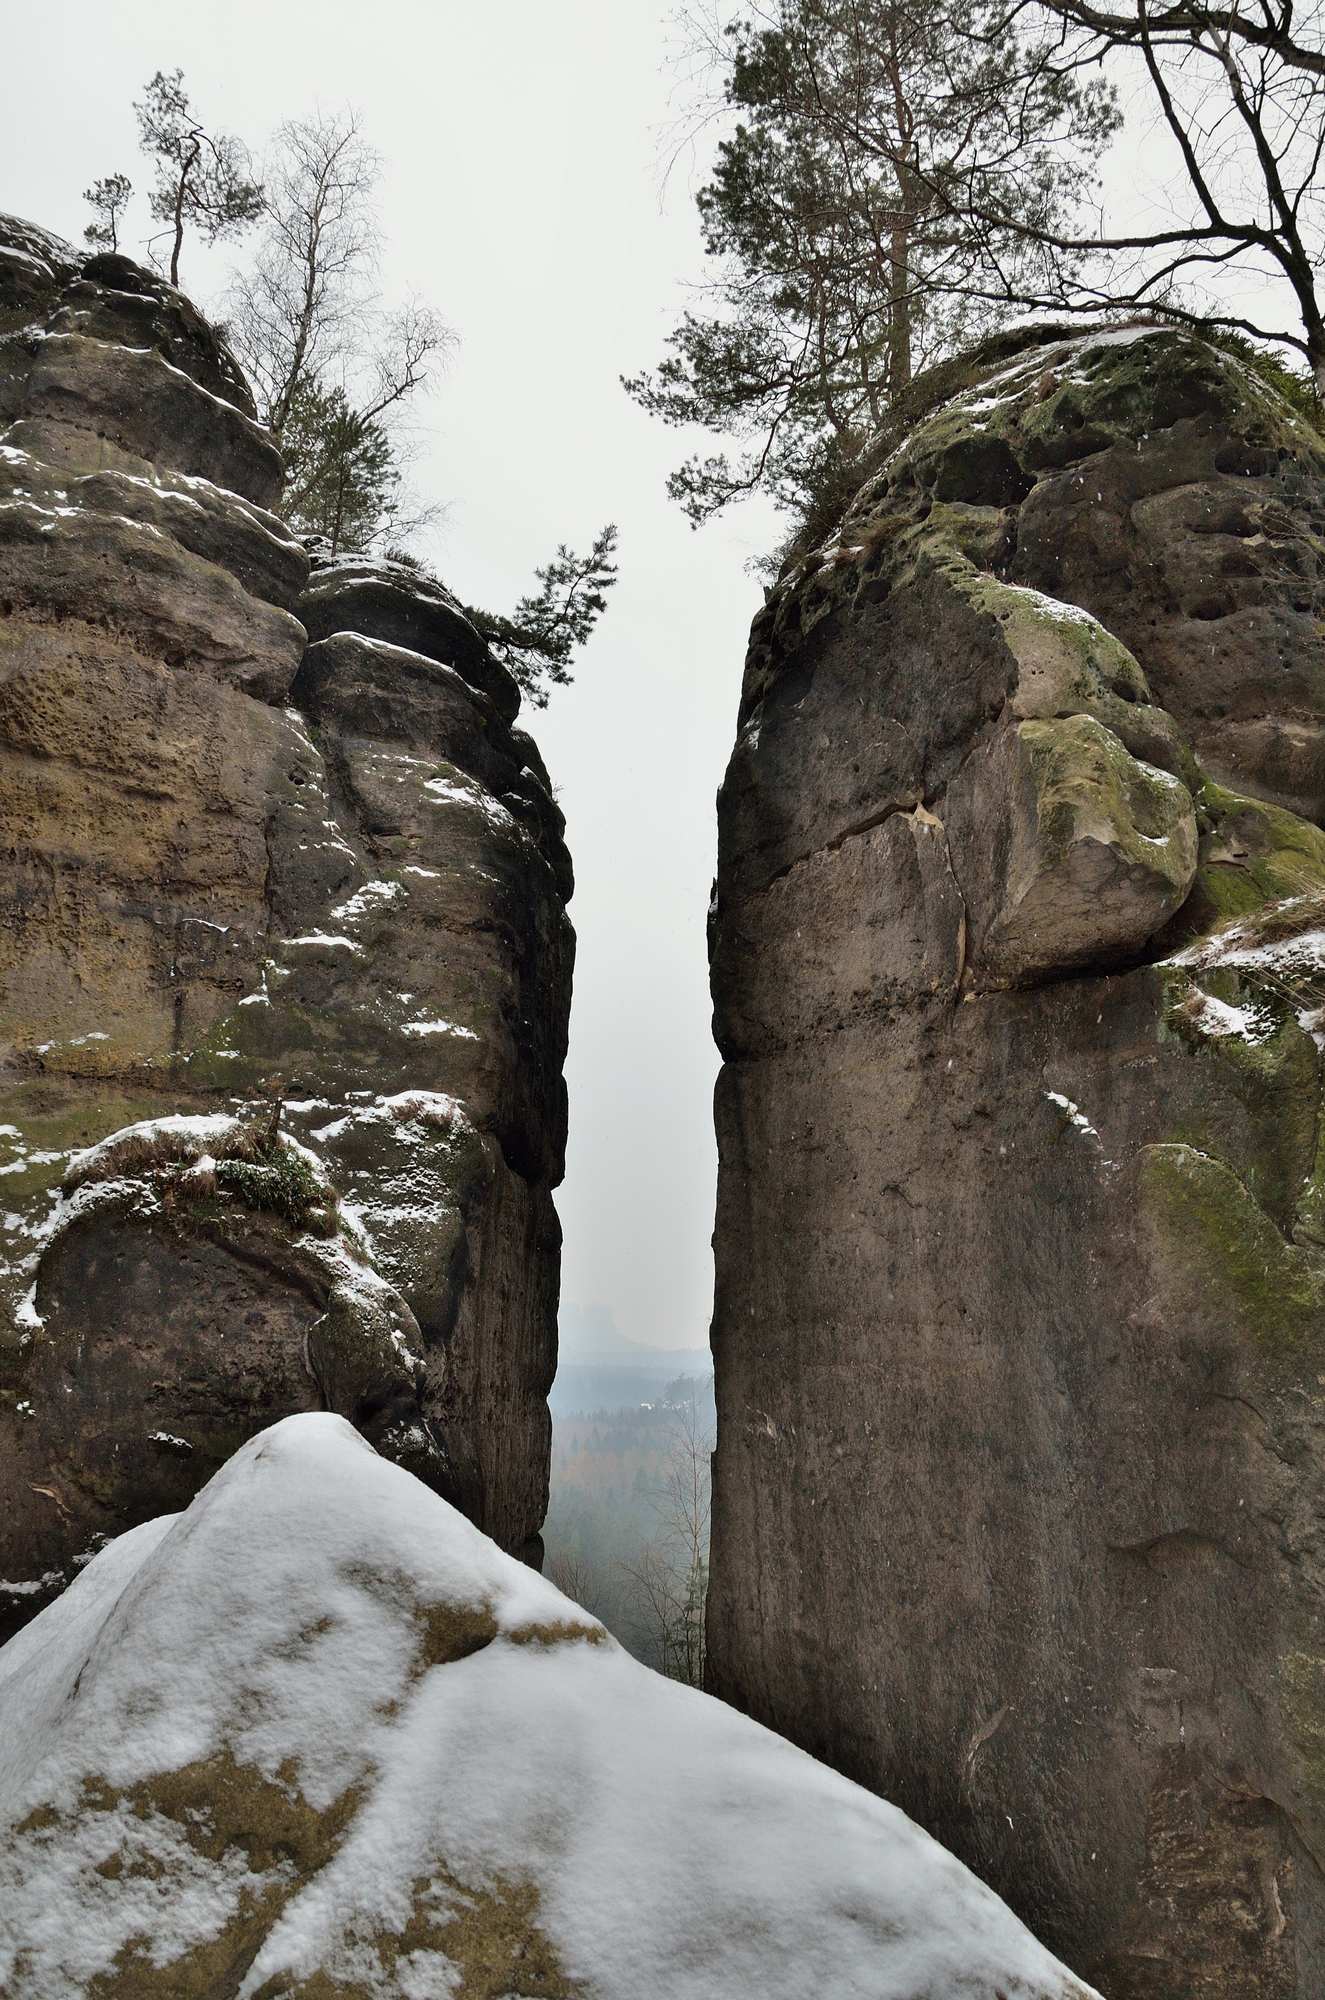 Песчаниковые скалы у каменной арки  Кушталь в Саксонской Швейцарии